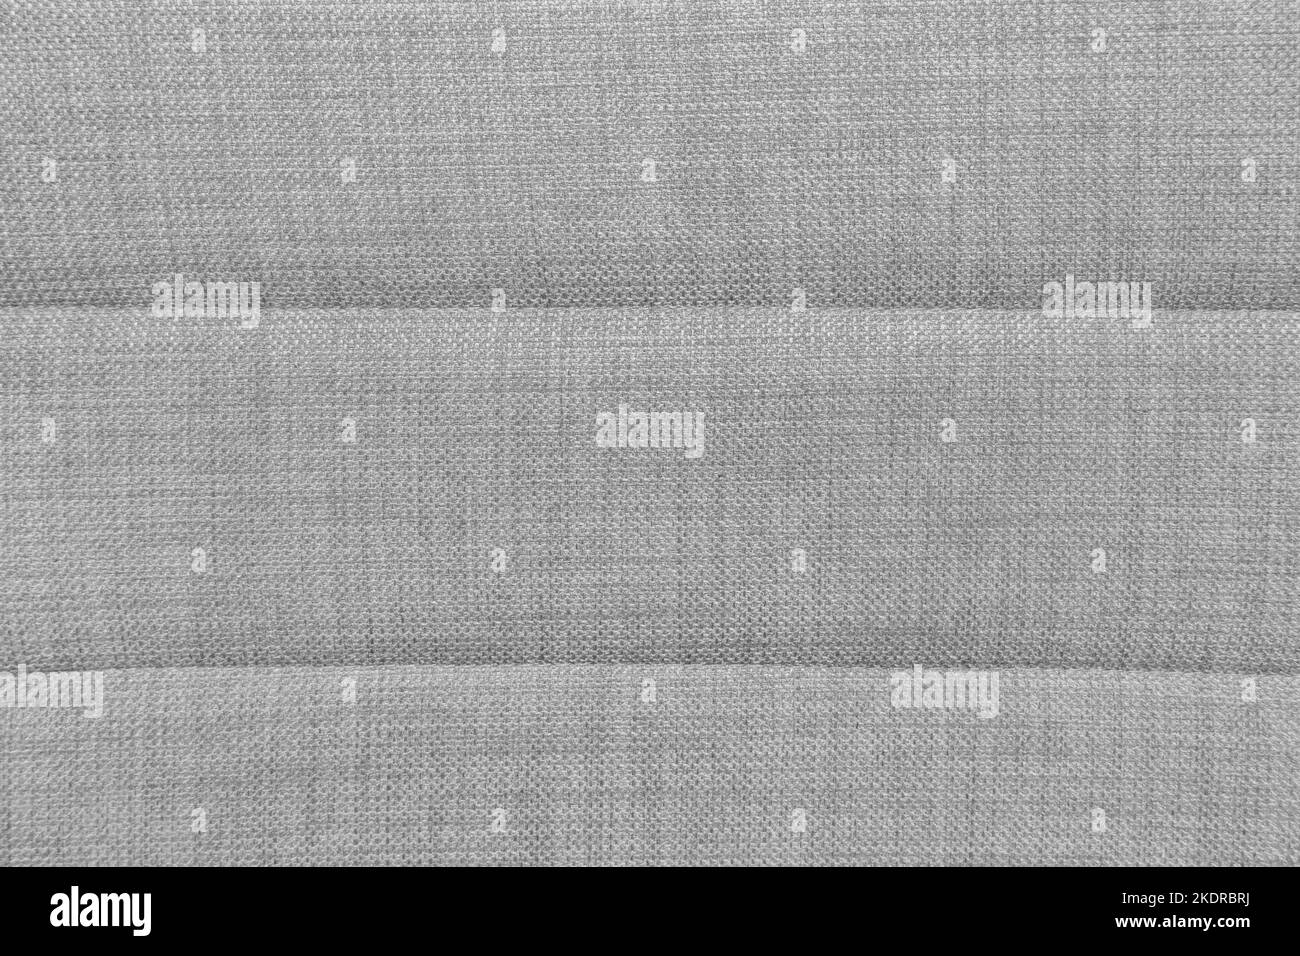 La textura de la alfombra gris. el fondo de tela gris. vista superior.